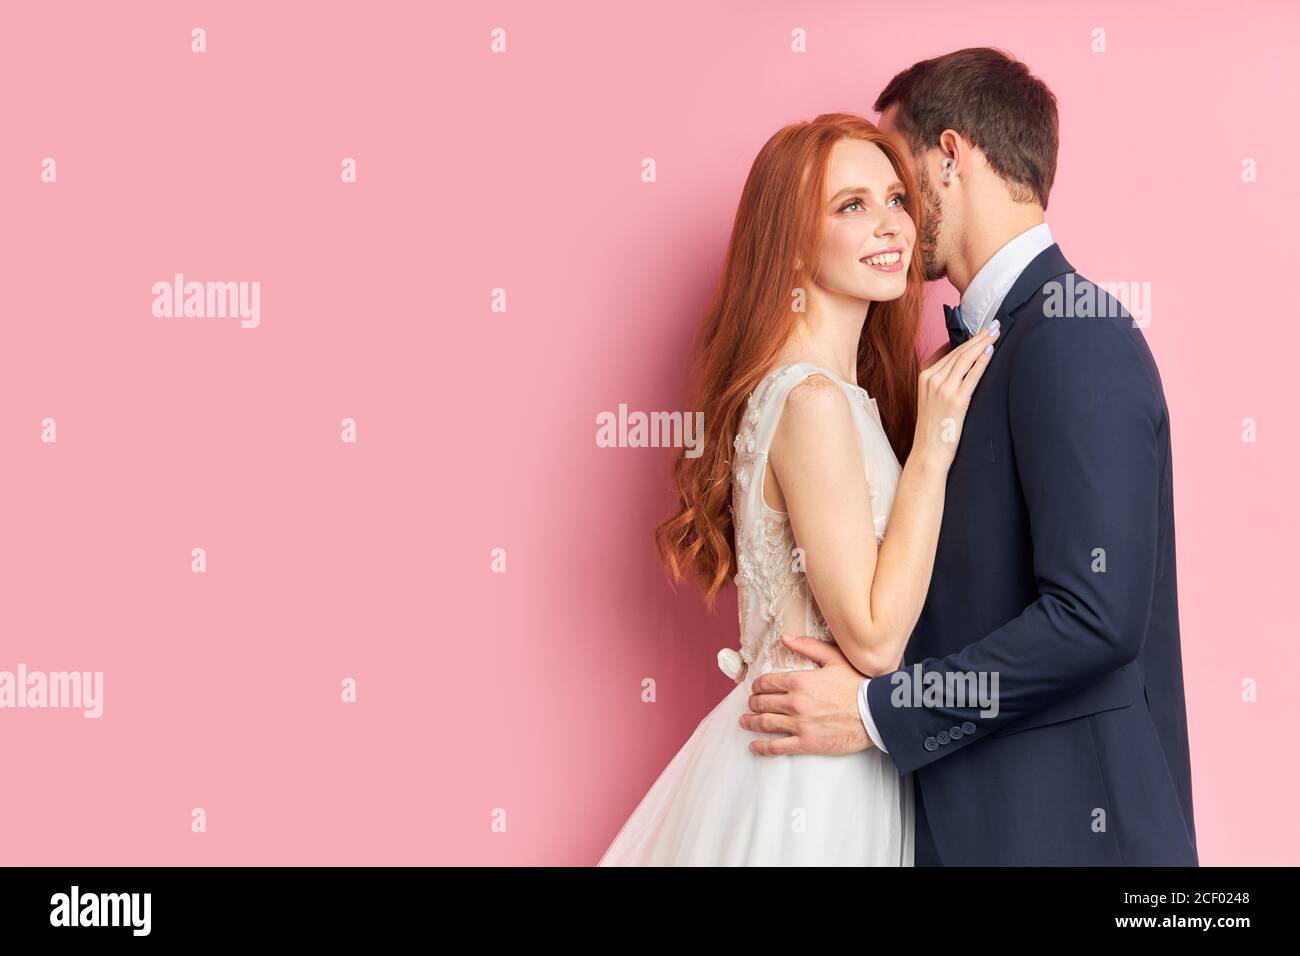 Attraktive Frau mit Auburn Haar umarmt ihren Verlobten in eleganten Anzug küssen sie. Glückliche junge Familie, Liebeskonzept Stockfoto